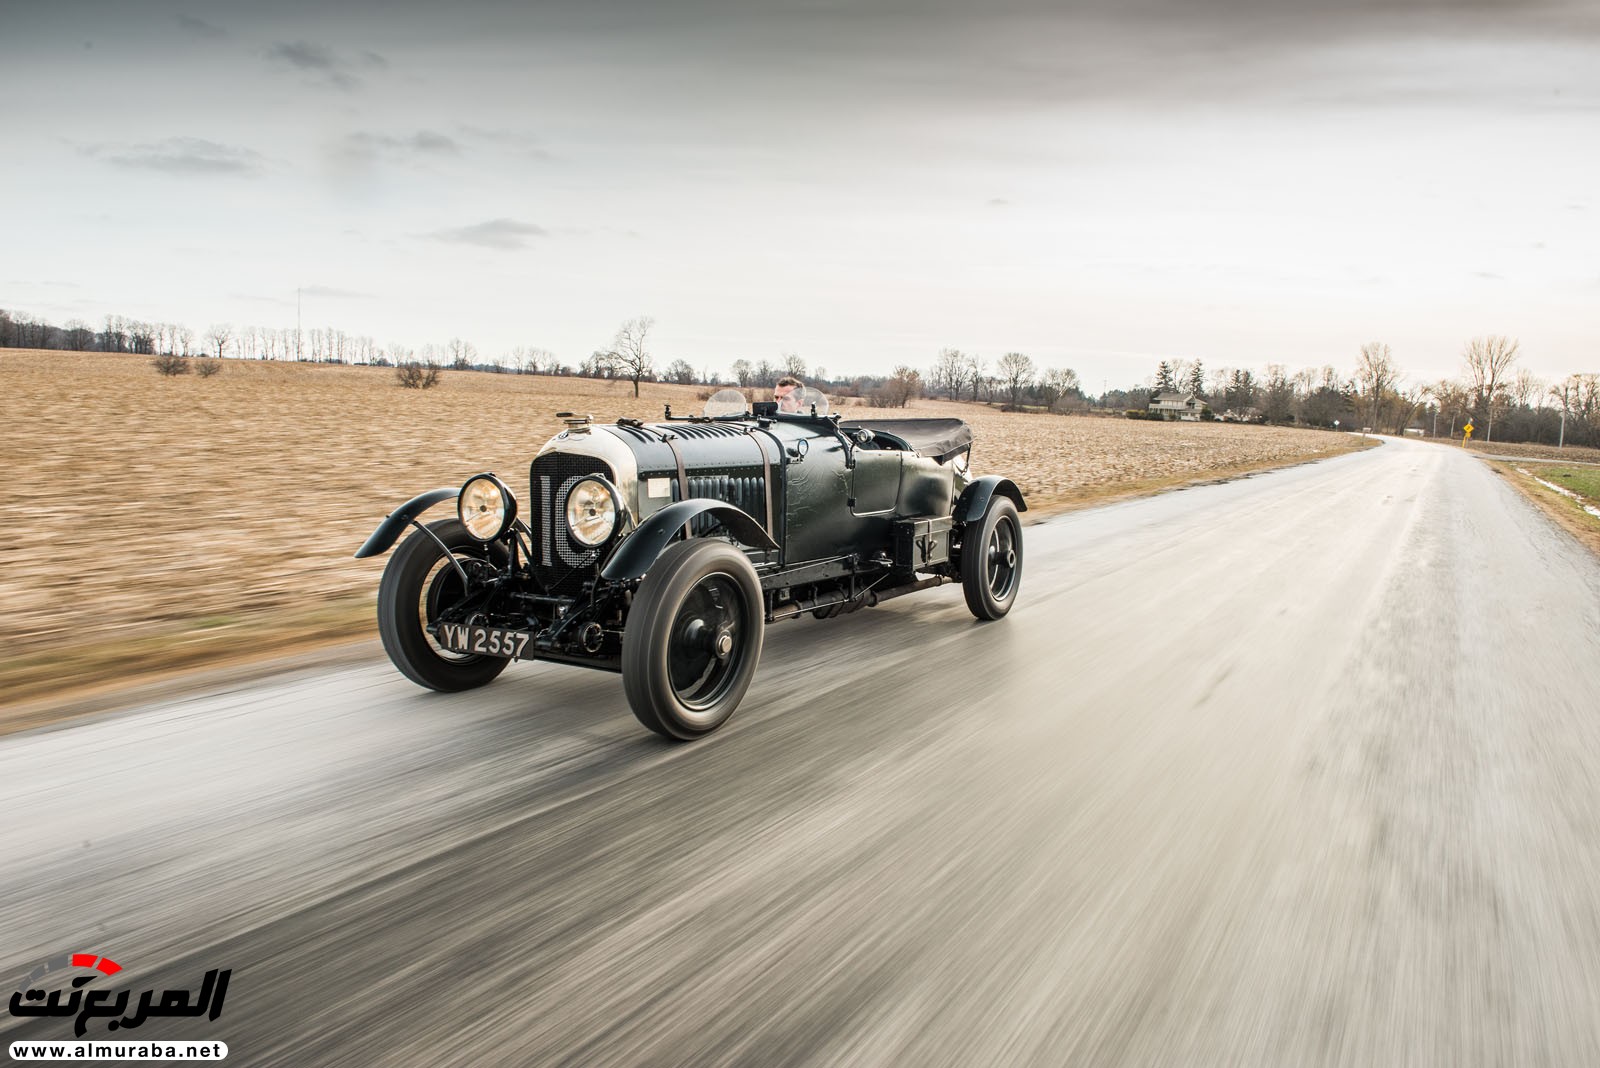 "بالصور" سيارة بنتلي موديل 1928 المشاركة في سباقات لومان تعرض بـ 7 مليون دولار في مزاد علني 119